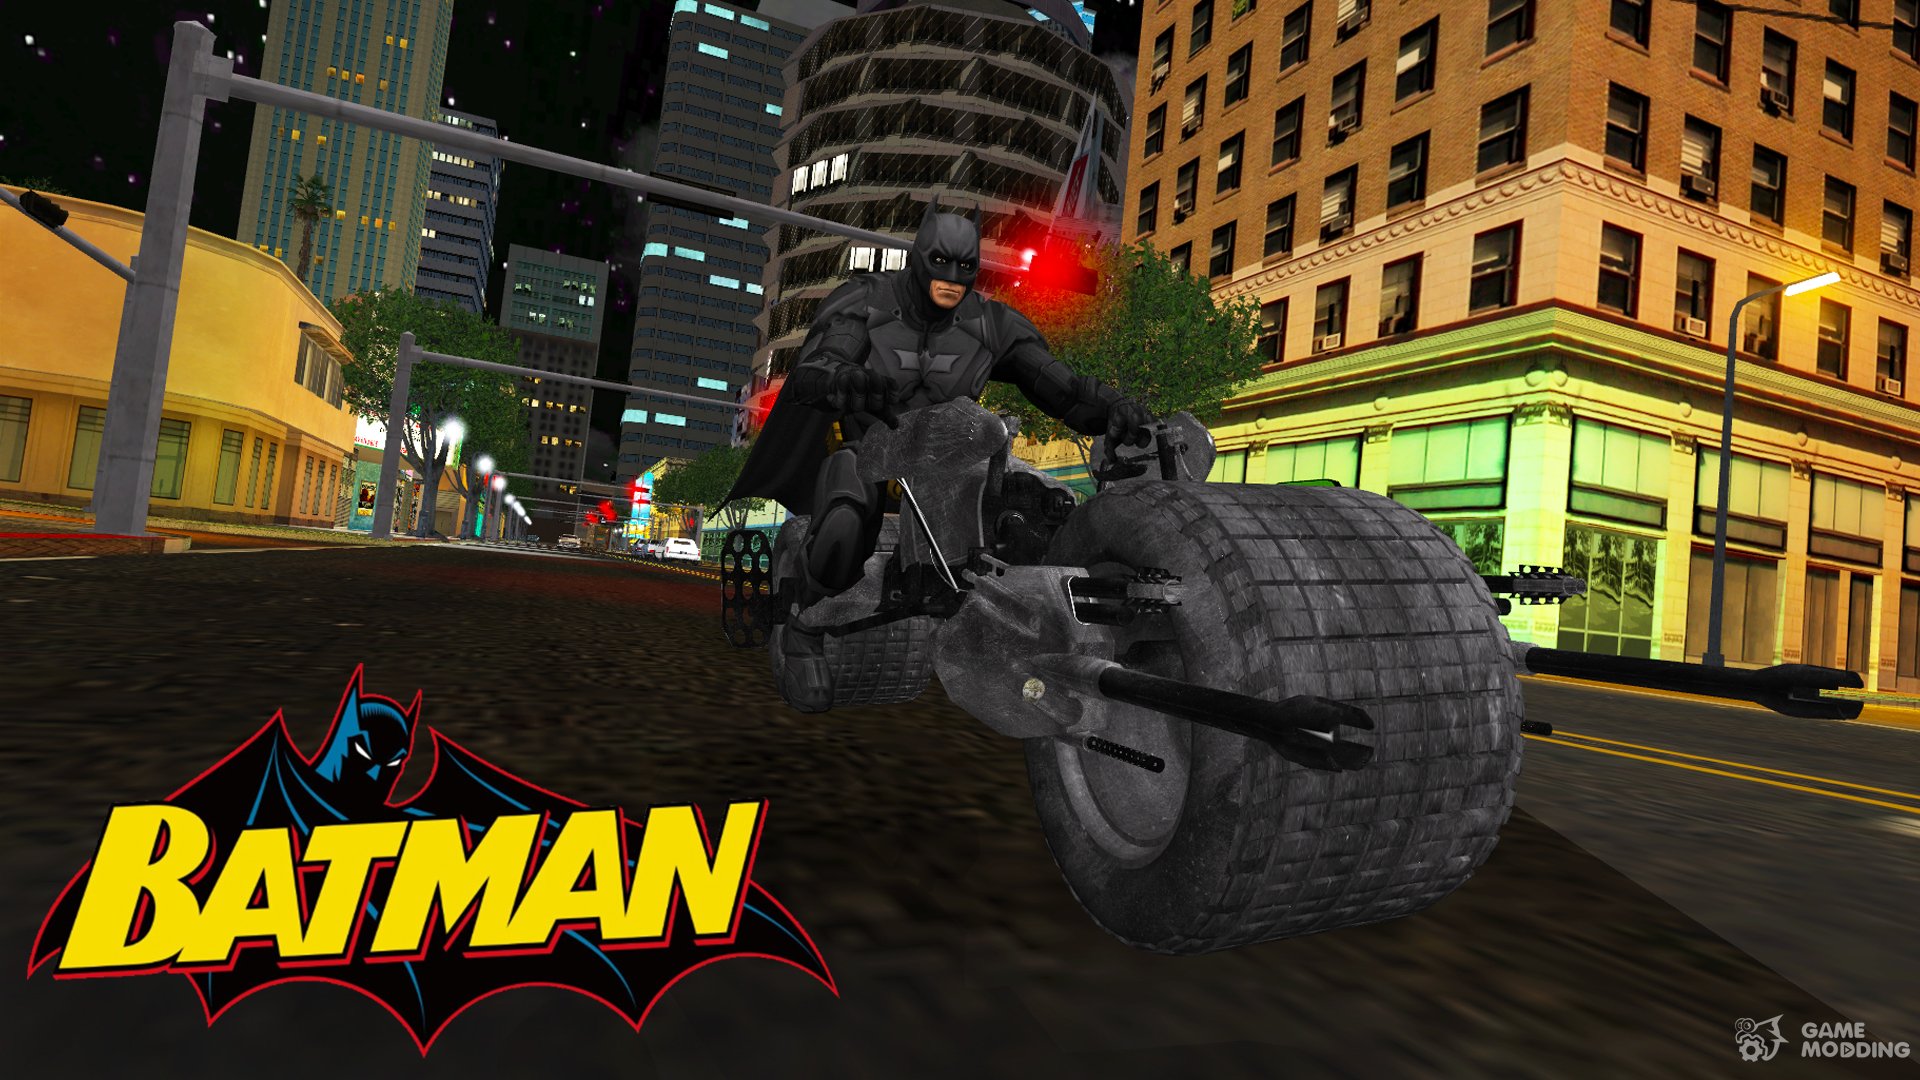 Batman Mod v1.0 for GTA San Andreas